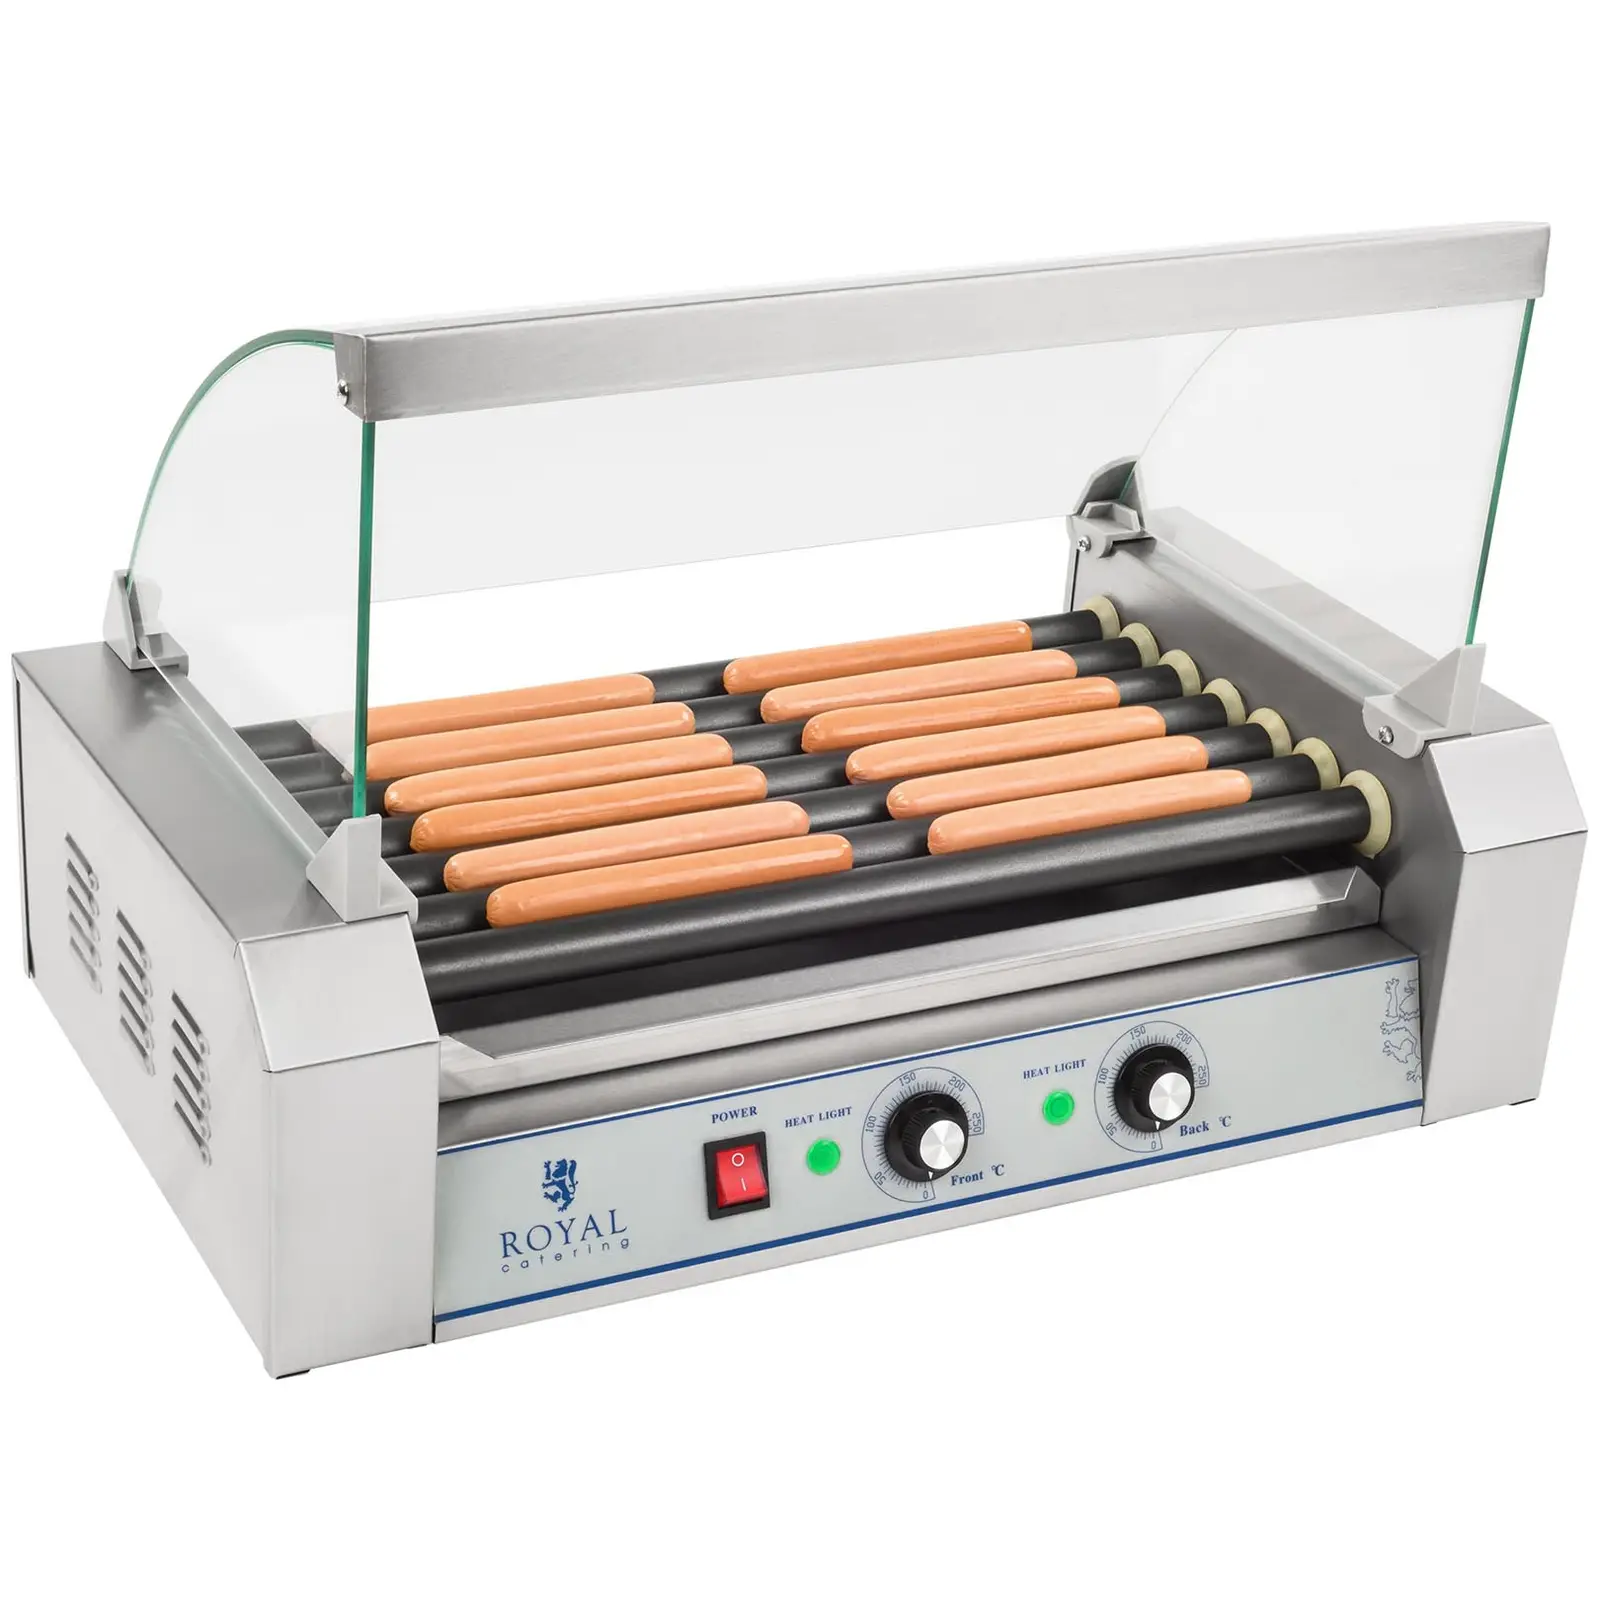 Roller grill - urządzenie do hot-dogów - 1400 W - 12 parówek